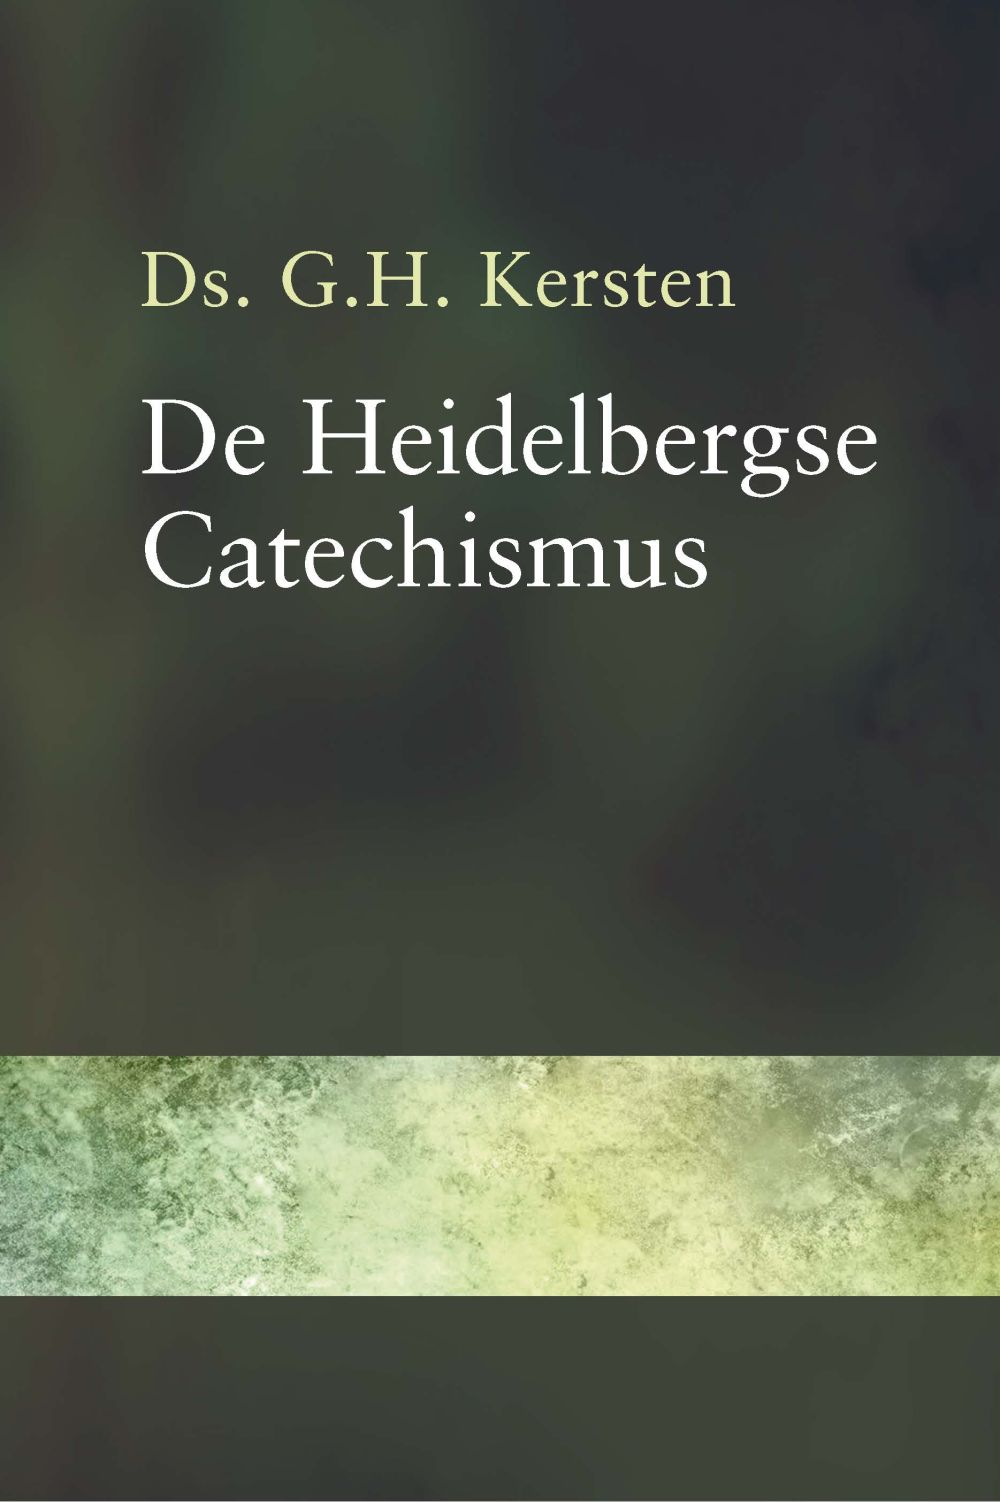 De Heidelbergse Catechismus in 52 preken